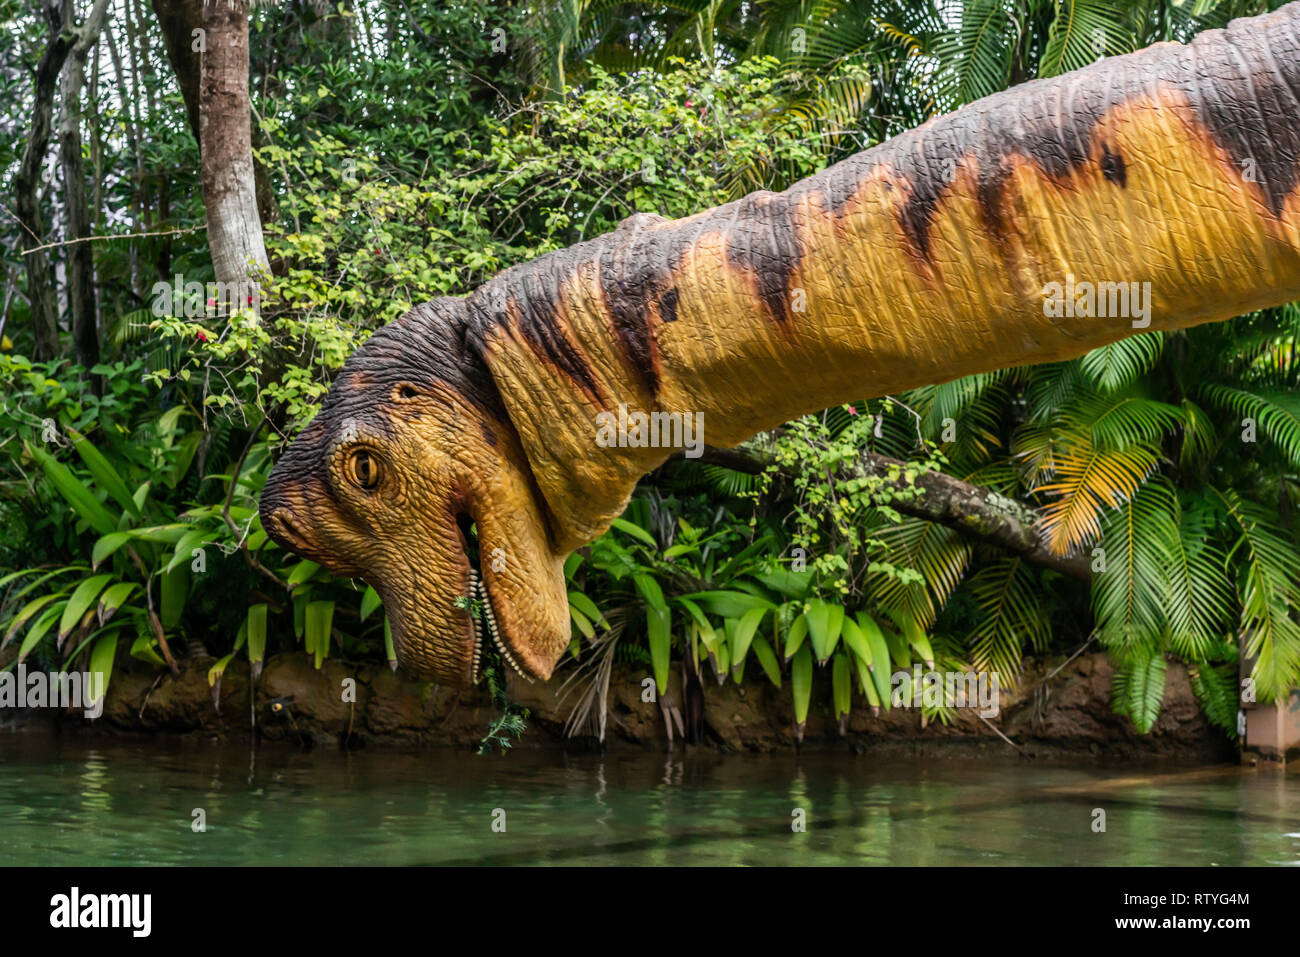 ORLANDO, FLORIDE, USA - DÉCEMBRE, 2018 : au dinosaure Jurassic Parc à thème, River Adventure, Universal Studios Orlando la Floride, Iles de l'Aventure Banque D'Images